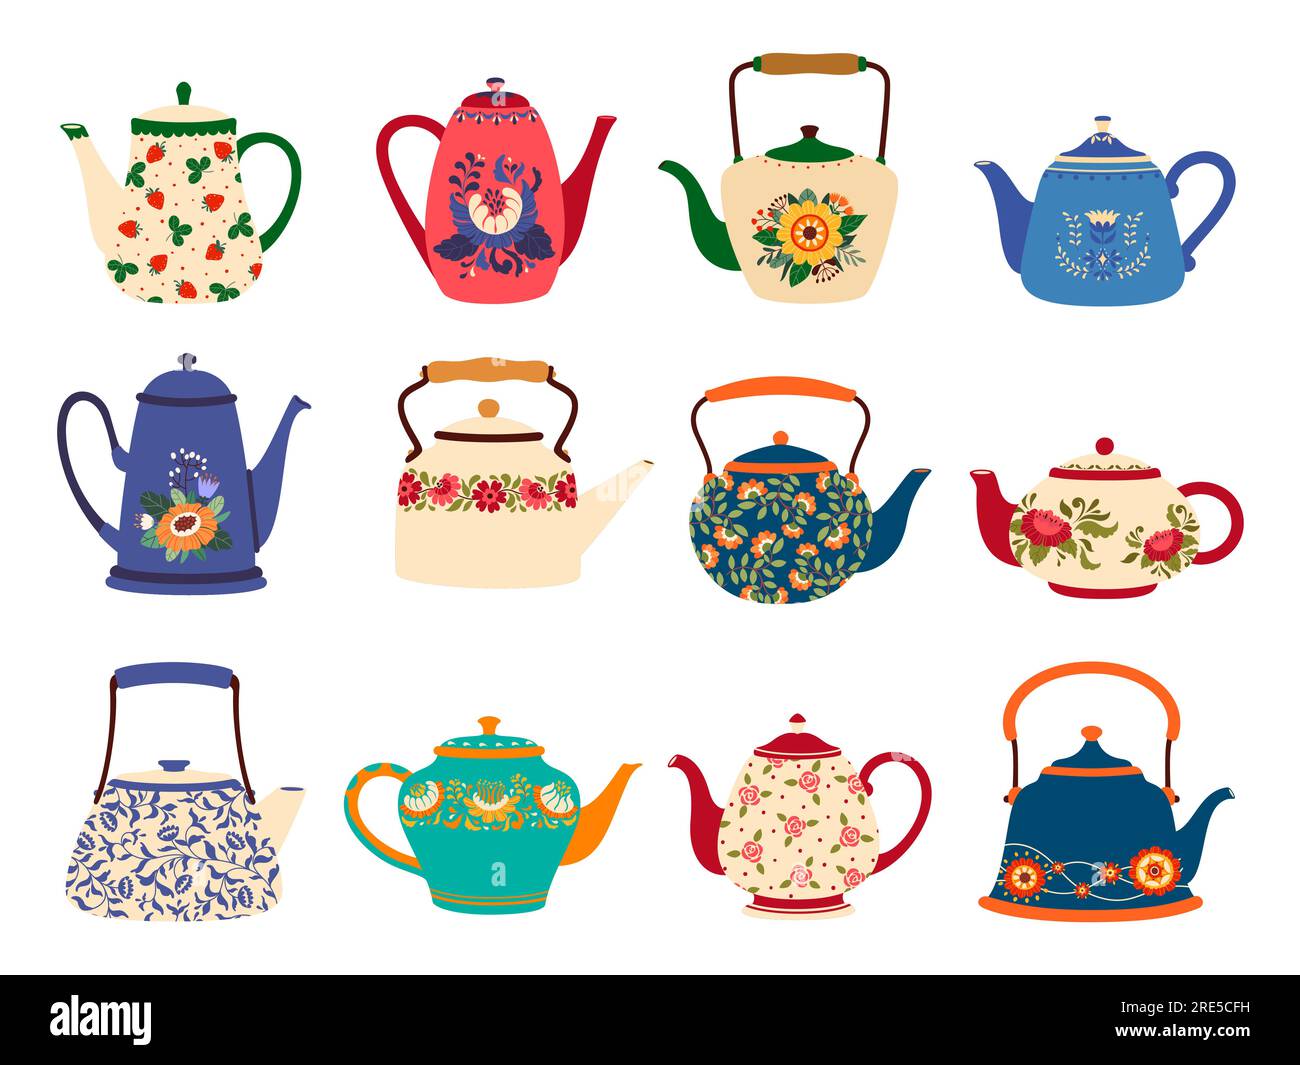 Cartoon tea pot hi-res stock photography and images - Alamy